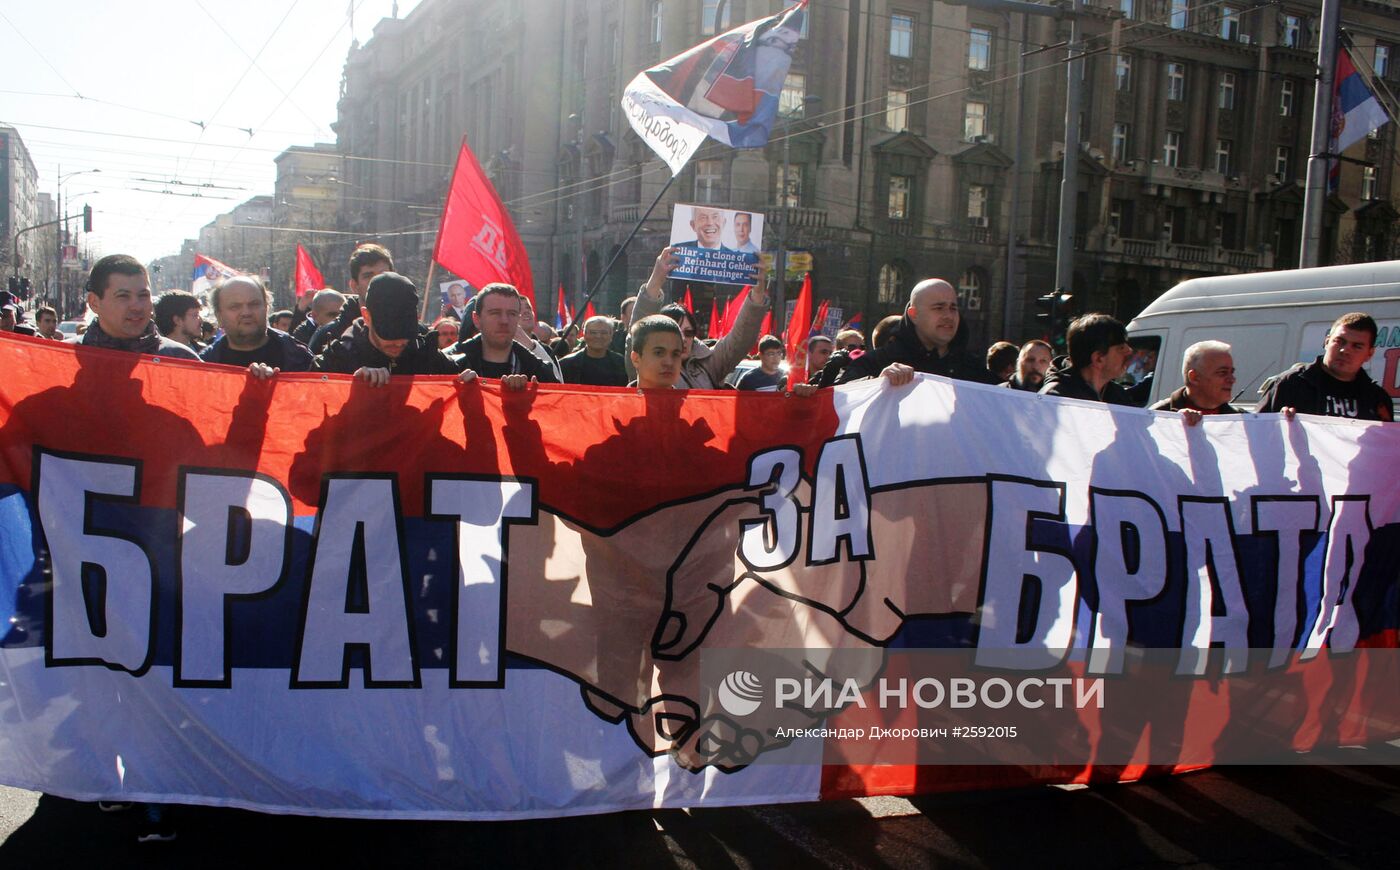 Антиправительственные протесты в Белграде